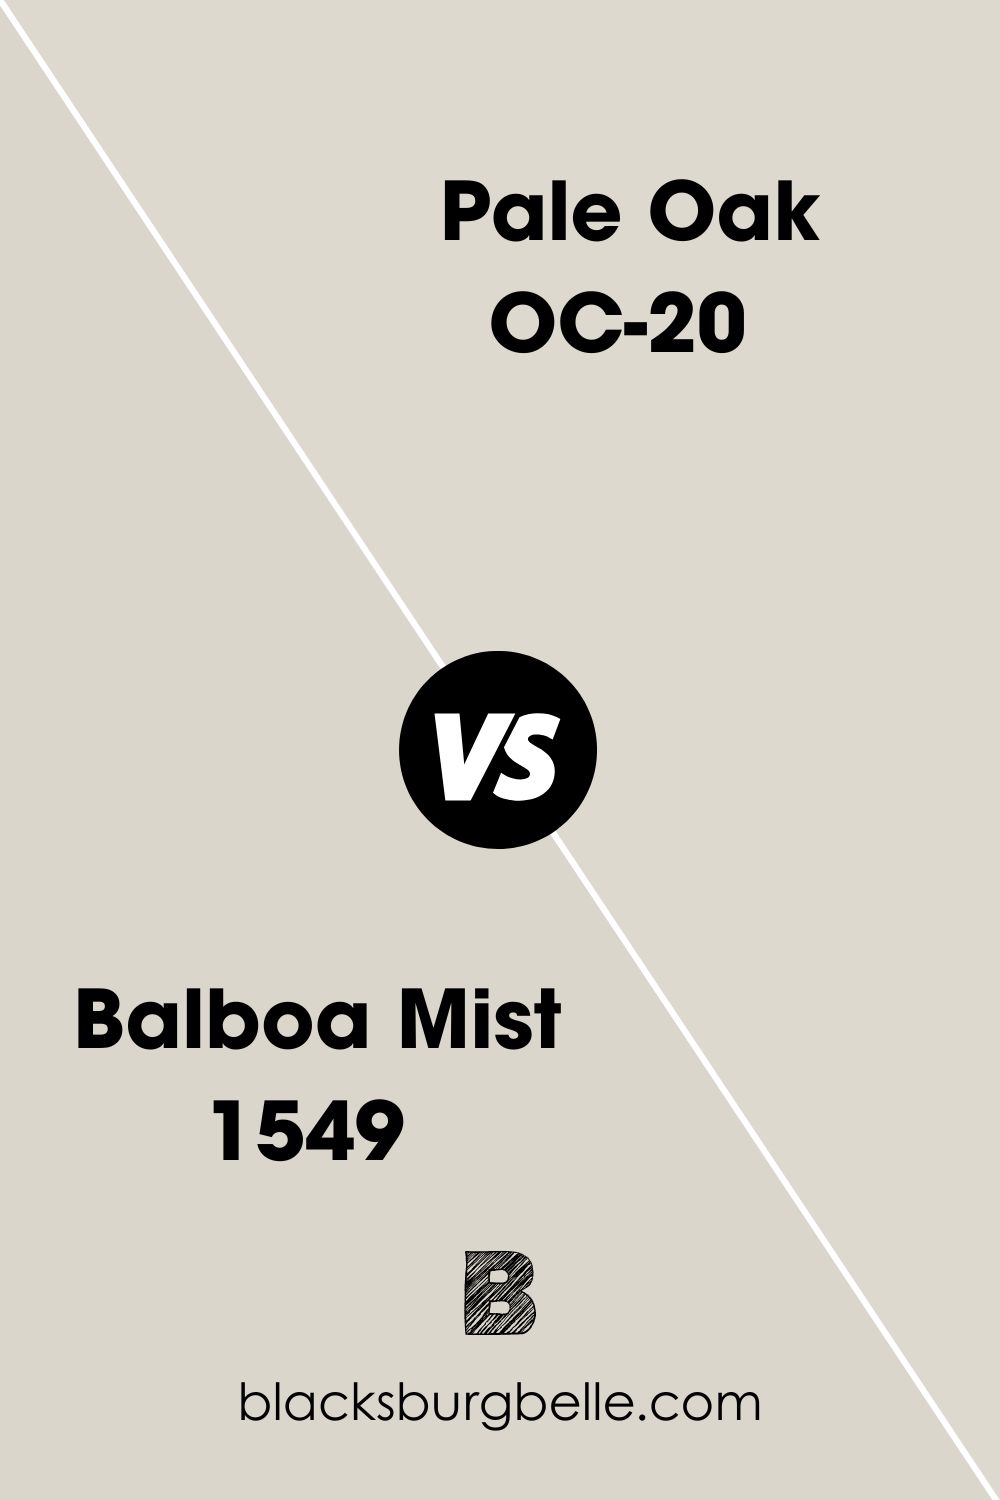 Balboa Mist 1549